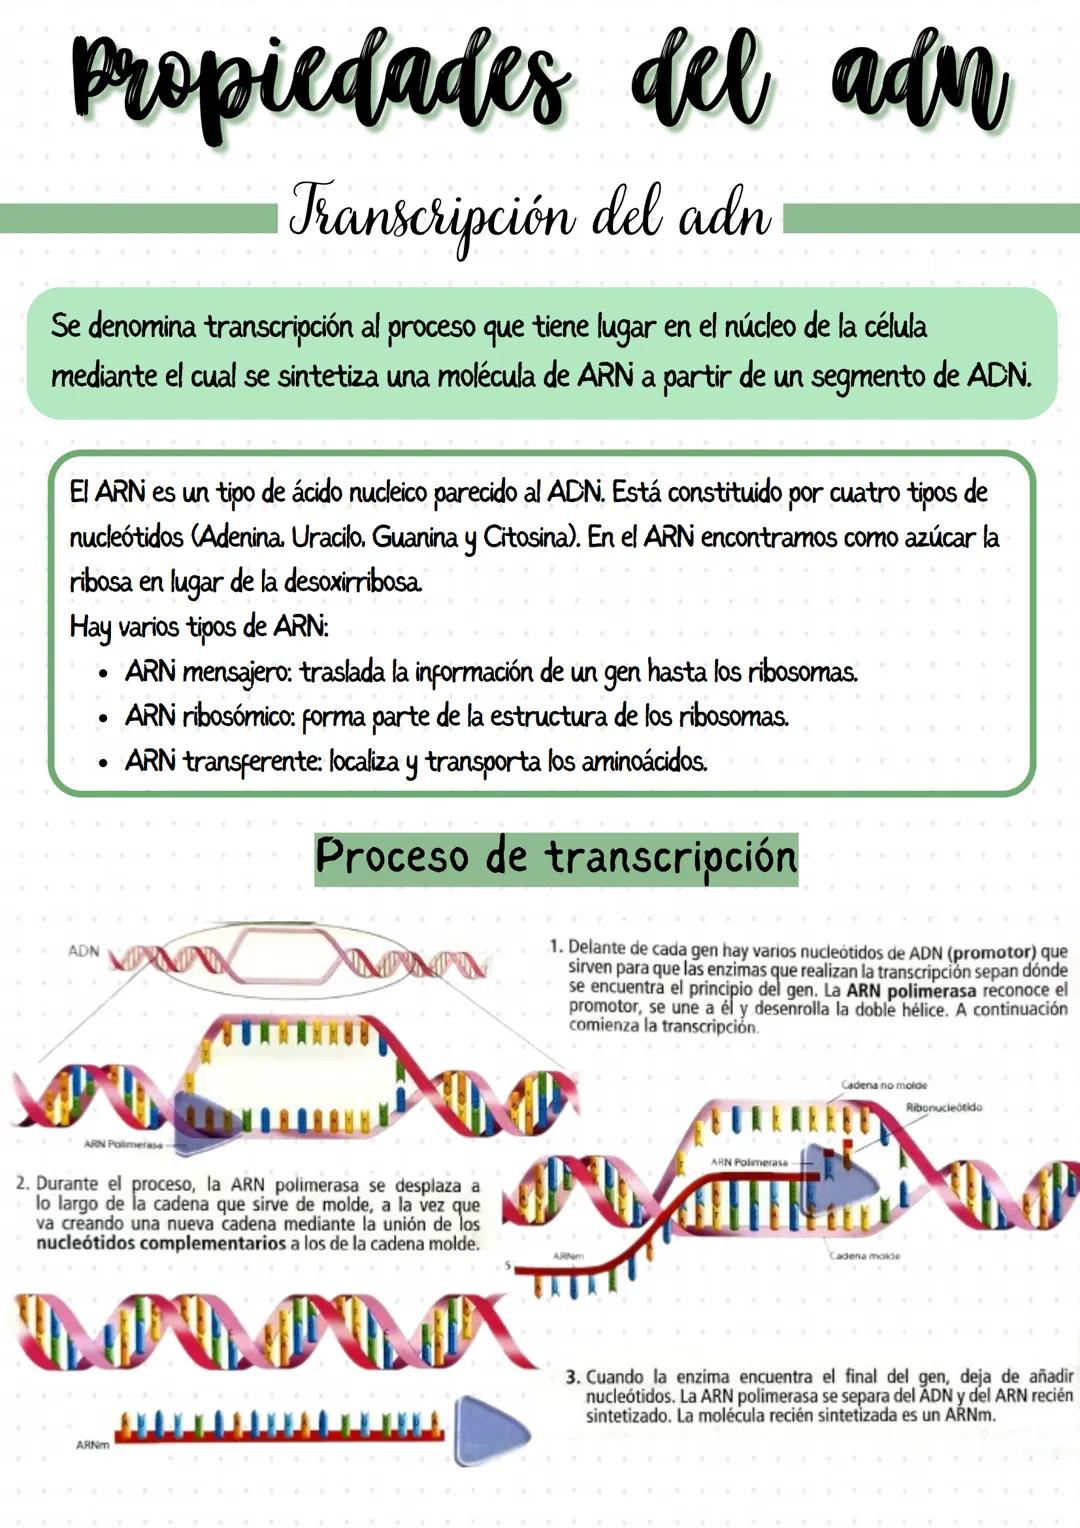 
<p>Los genes son segmentos de ADN que llevan información para un determinado carácter biológico, y pueden considerarse las unidades de tran